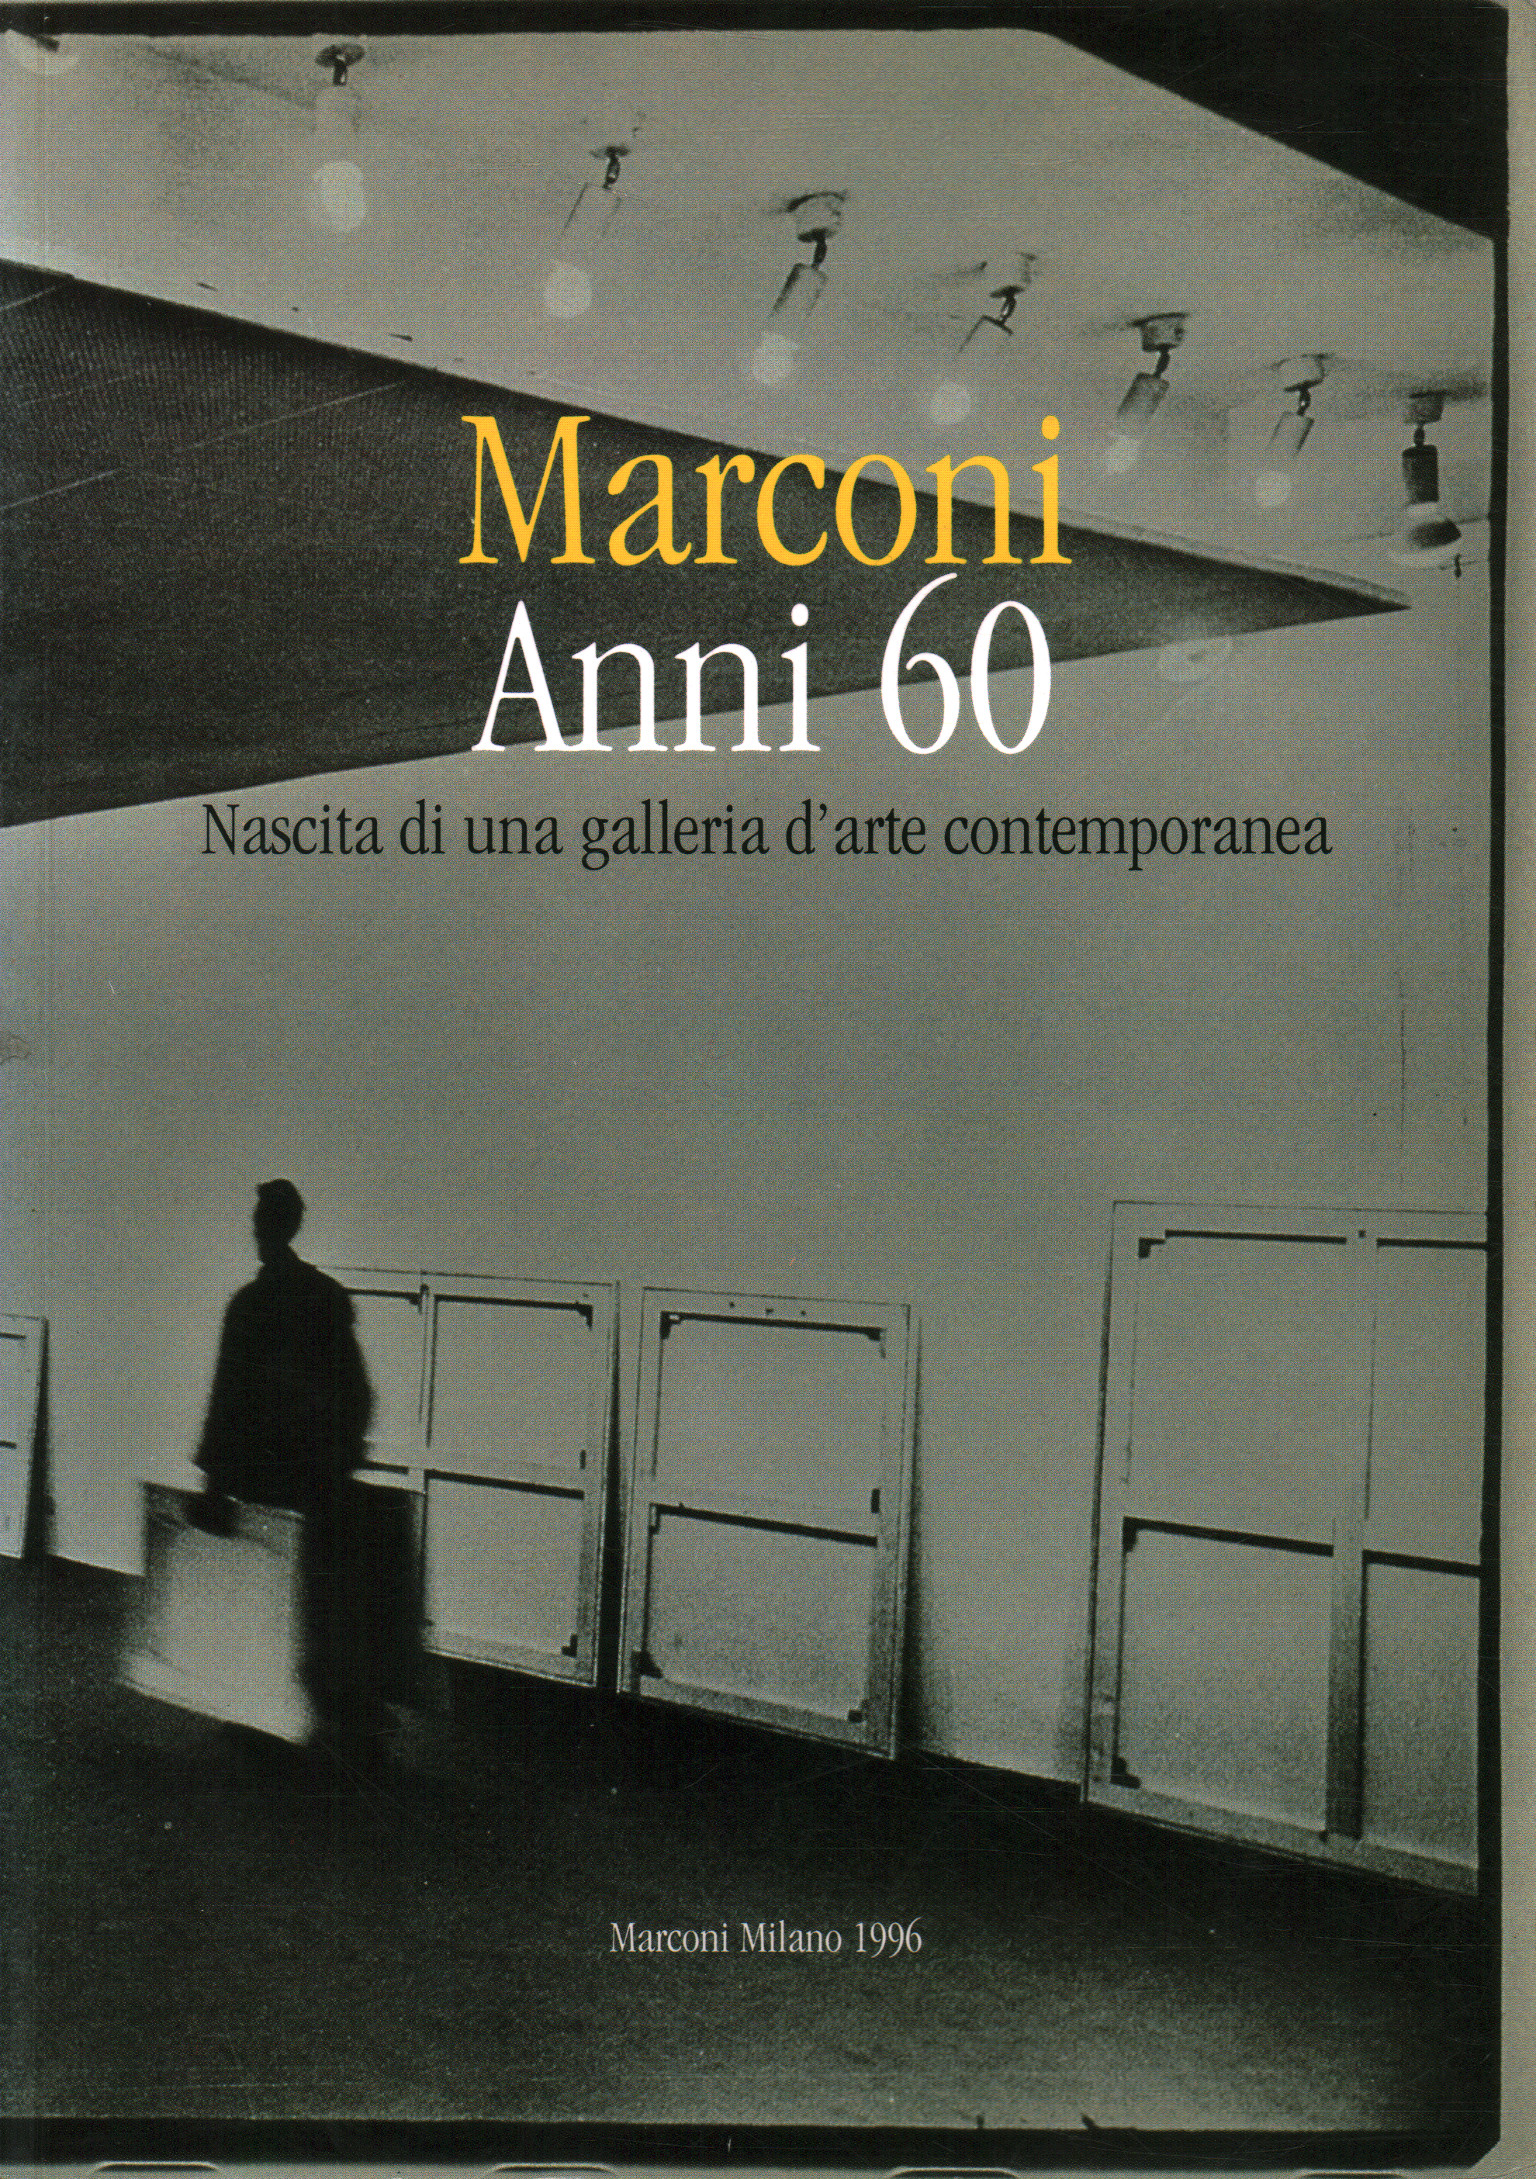 Marconi 1960. Geburt eines Galeristen